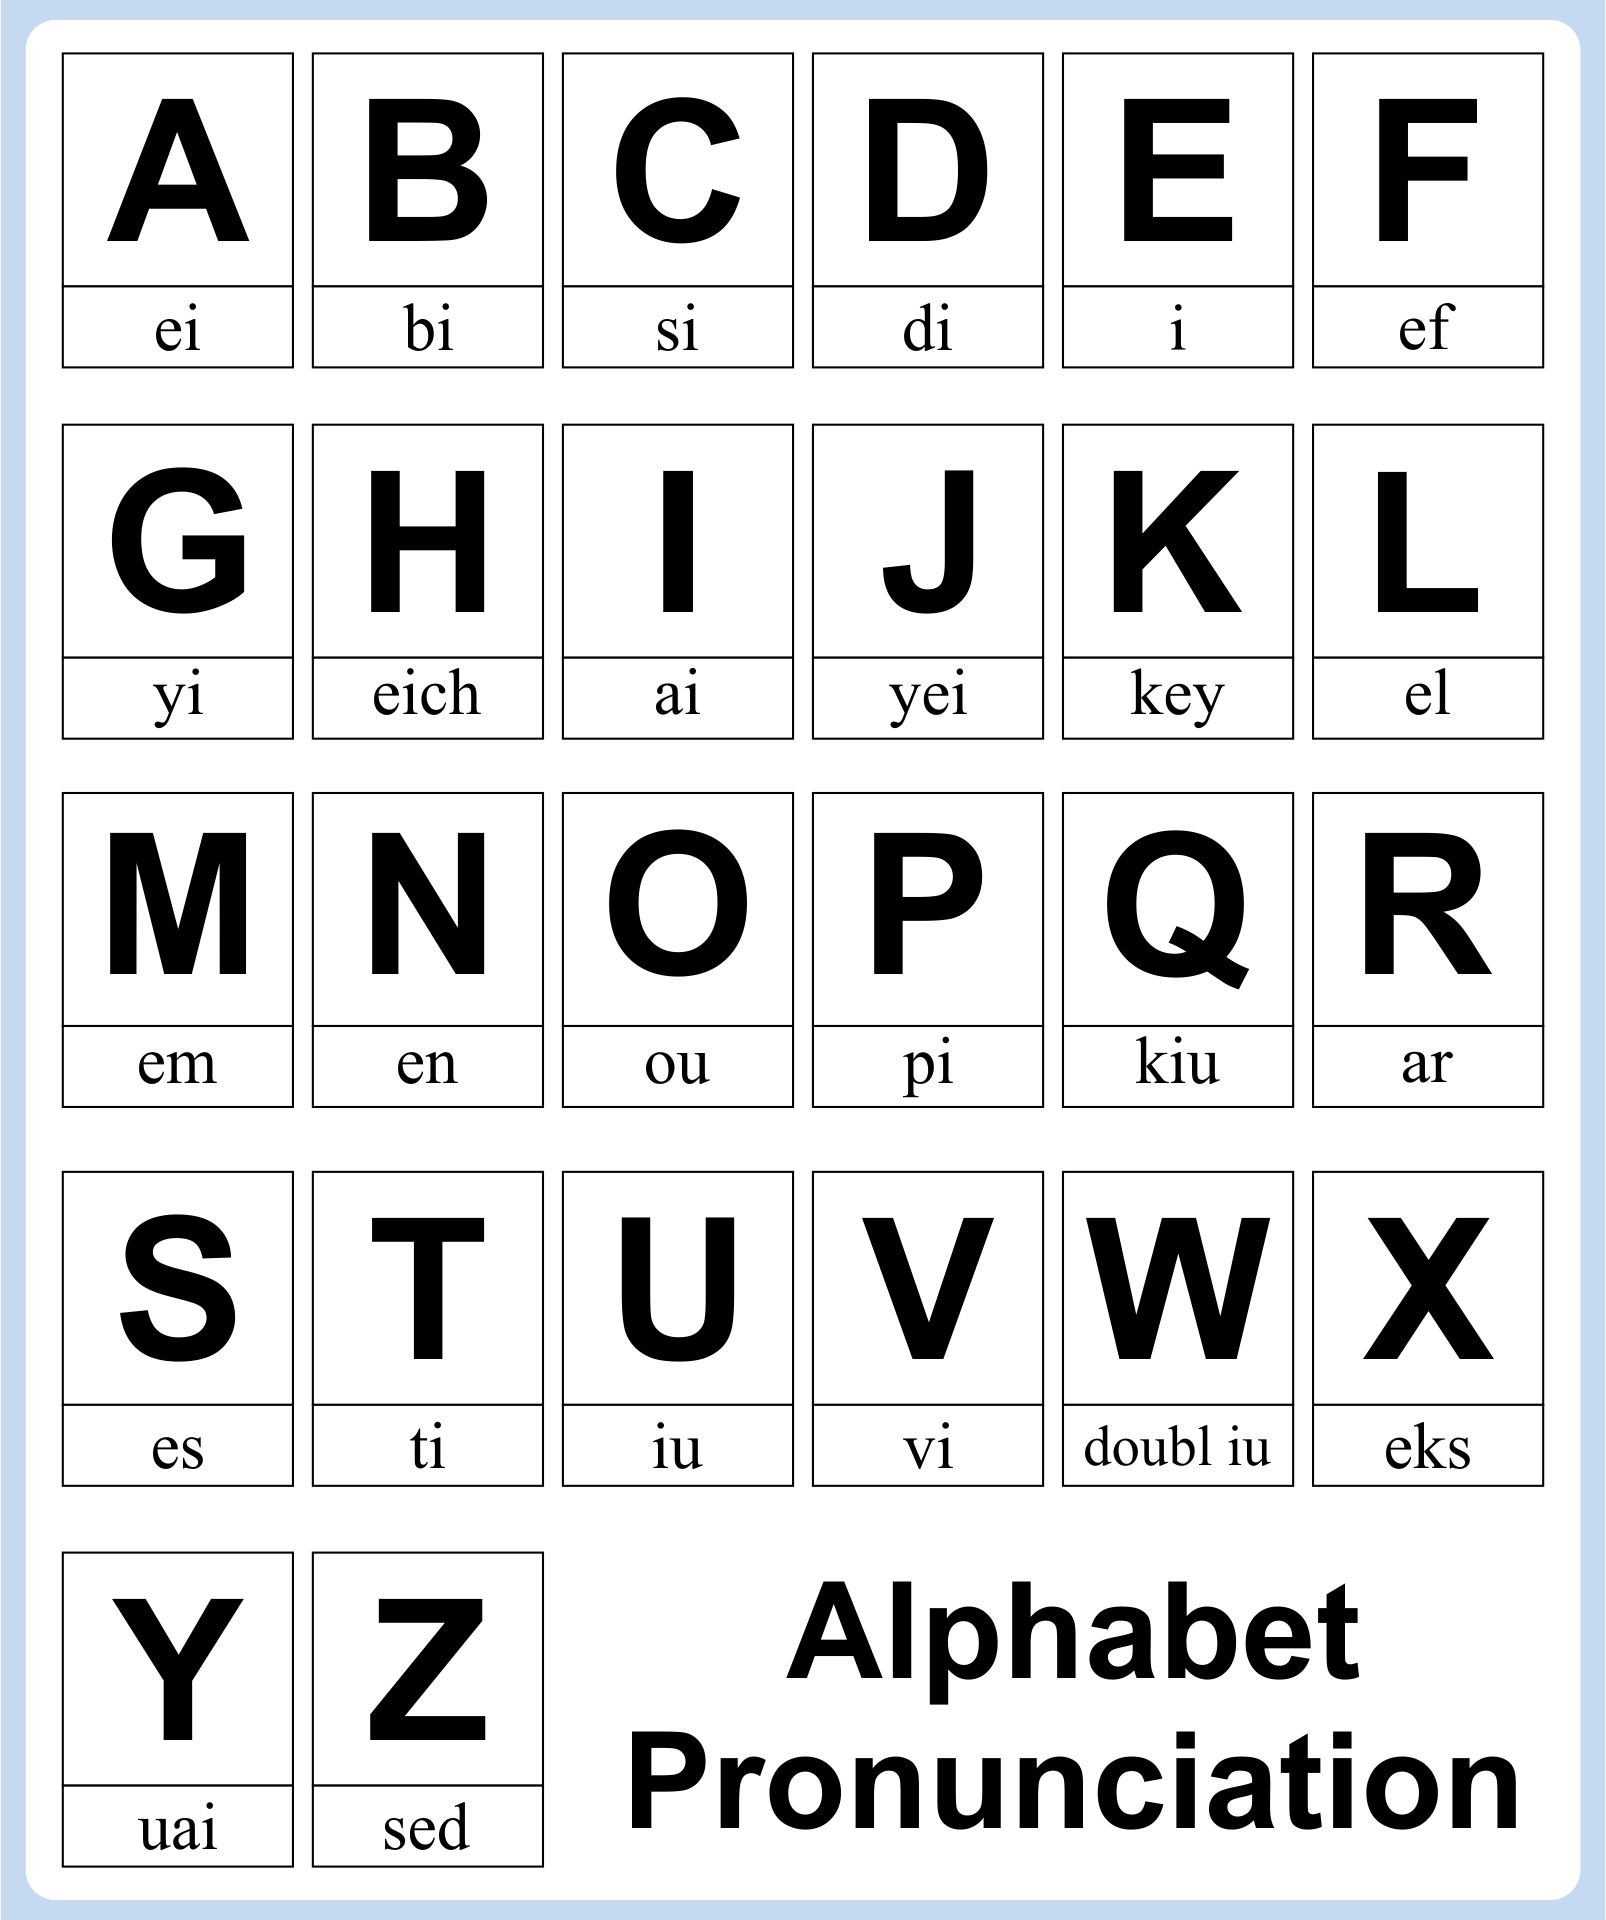 Phonetic Alphabet Voice